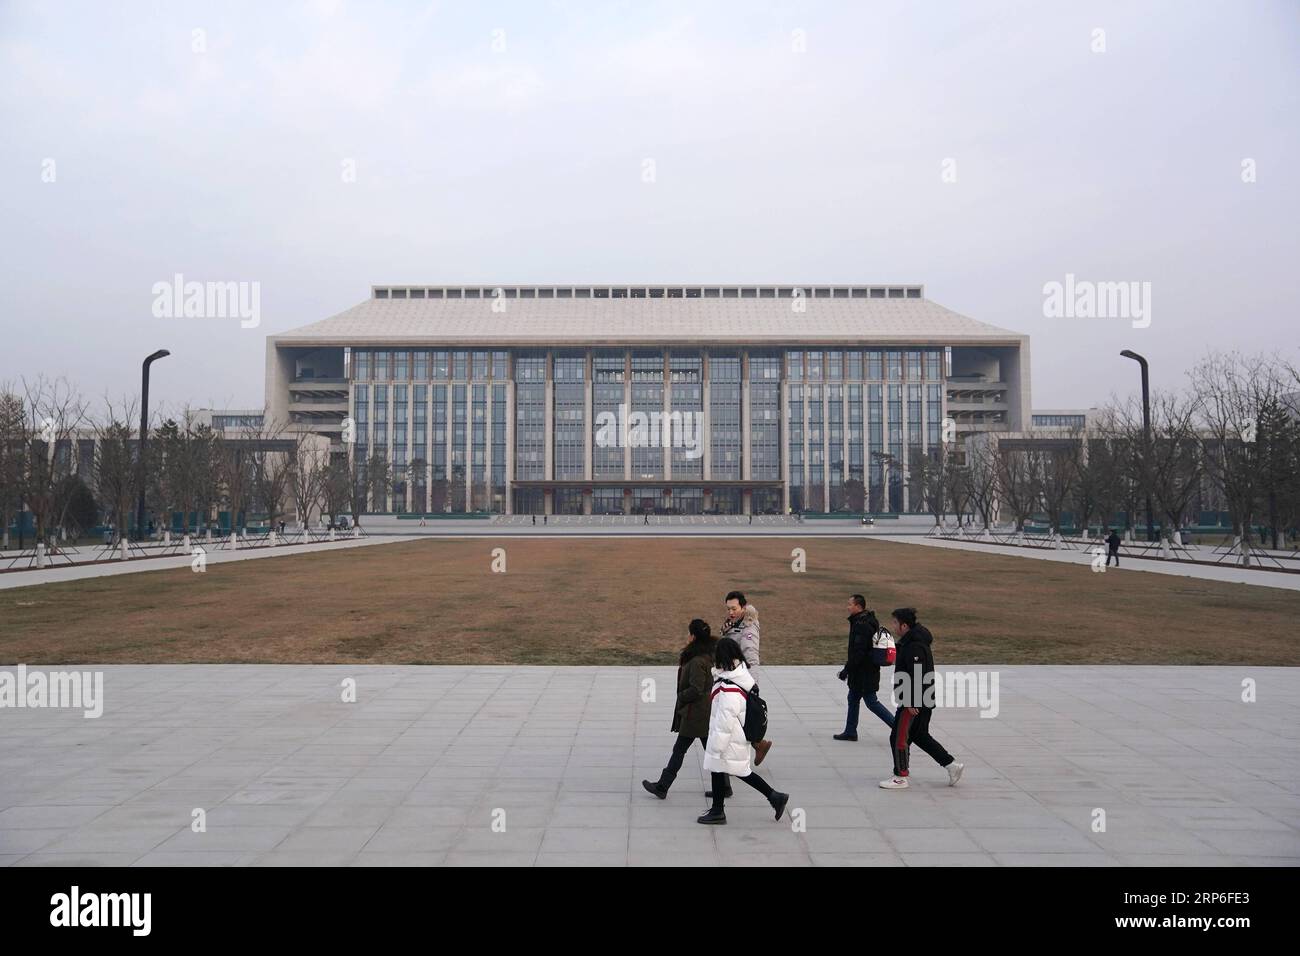 (190112) -- PECHINO, 12 gennaio 2019 (Xinhua) -- i membri del personale passano il nuovo edificio per uffici del Comitato municipale del Partito Comunista Cinese (CPC) di Pechino nel distretto di Tongzhou a Pechino, capitale della Cina, 11 gennaio 2019. La Cina sta procedendo con la costruzione della nuova area di Xiongan e del sub-centro di Pechino seguendo rigorosi standard, hanno detto i funzionari venerdì. Il progetto di alto livello per la nuova area di Xiongan è stato generalmente completato, con i sistemi di pianificazione e politica entrambi stabiliti, Lin Nianxiu, vice capo della Commissione nazionale per lo sviluppo e le riforme, ha detto una conferenza stampa. O Foto Stock